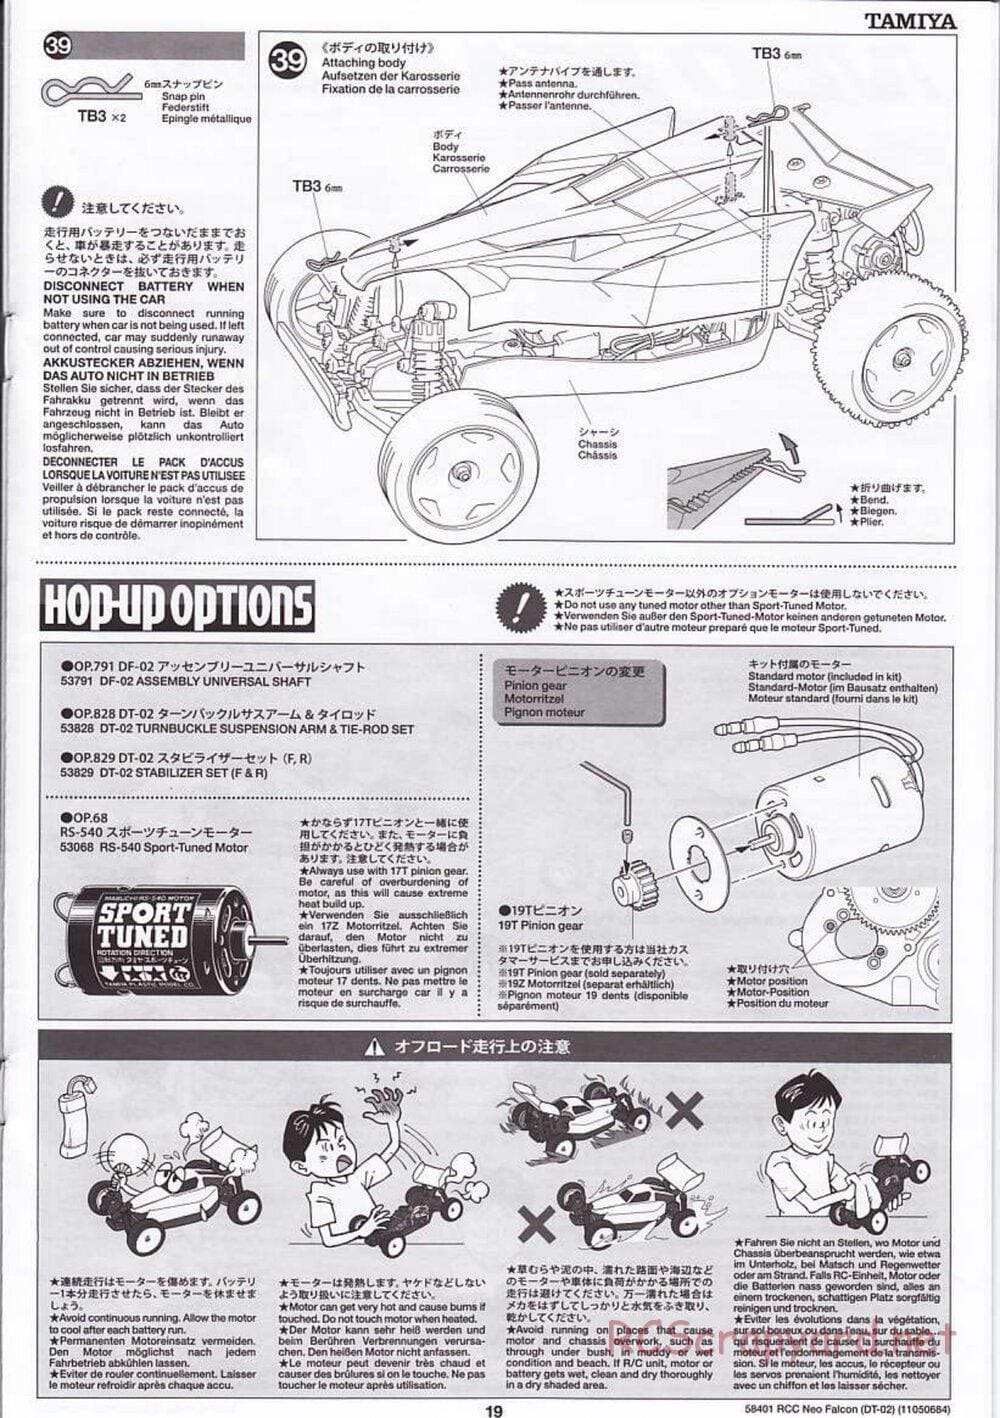 Tamiya - Neo Falcon Chassis - Manual - Page 19